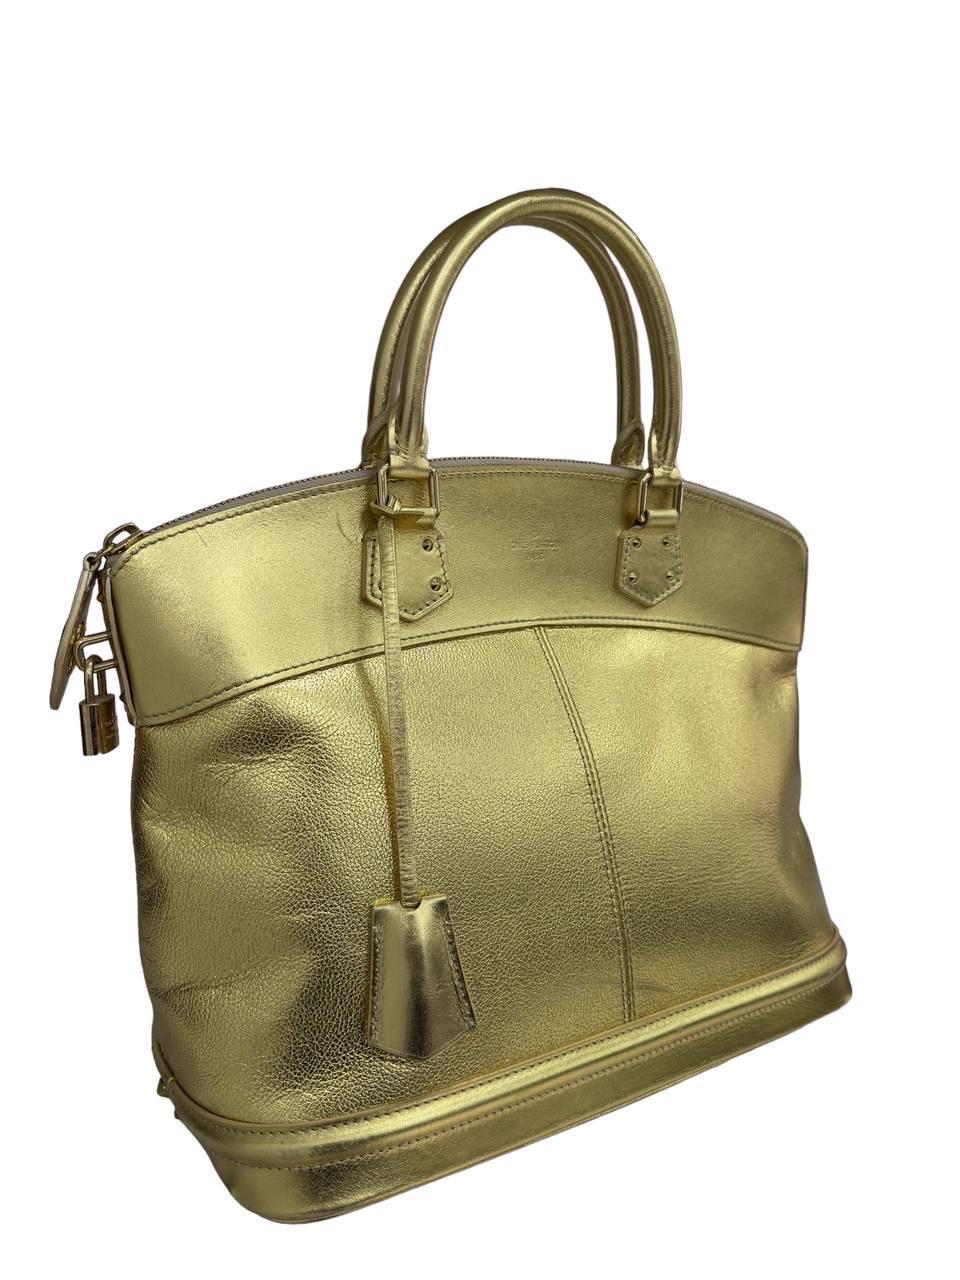 Borsa firmata Louis Vuitton, modello Lockit misura GM, realizzata in pelle oro con hardware oro. Munita di doppio manico rigido per un agevole portata a mano. Doté d'une fermeture à glissière, d'une pochette et d'écussons. Rivestita internamente en